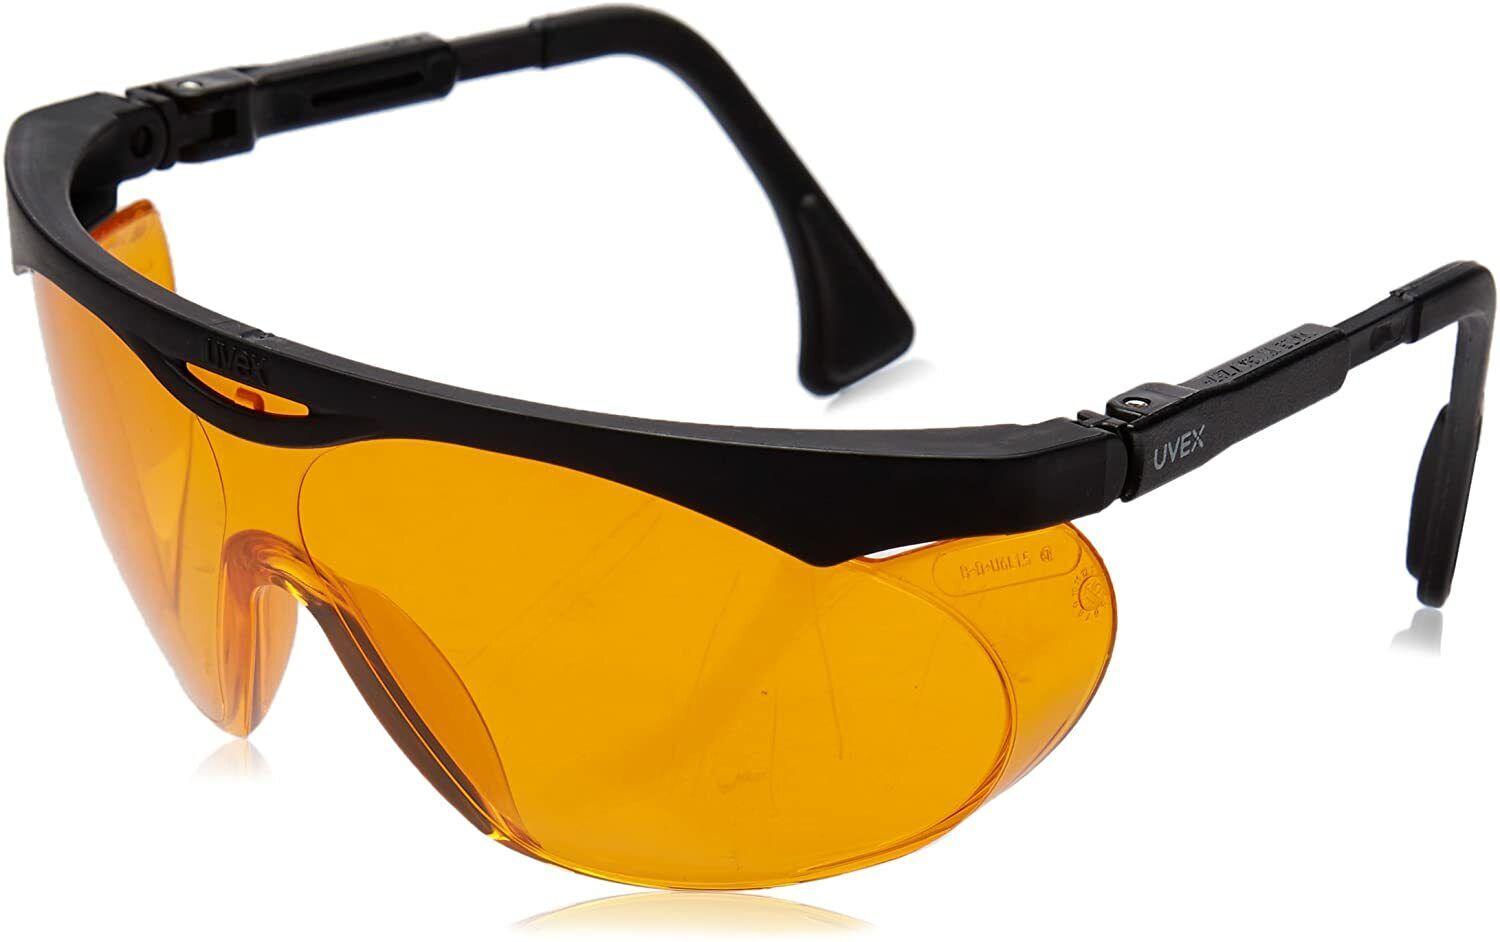 UVEX S1933X Skyper Safety Glasses, Black Frame With Orange A